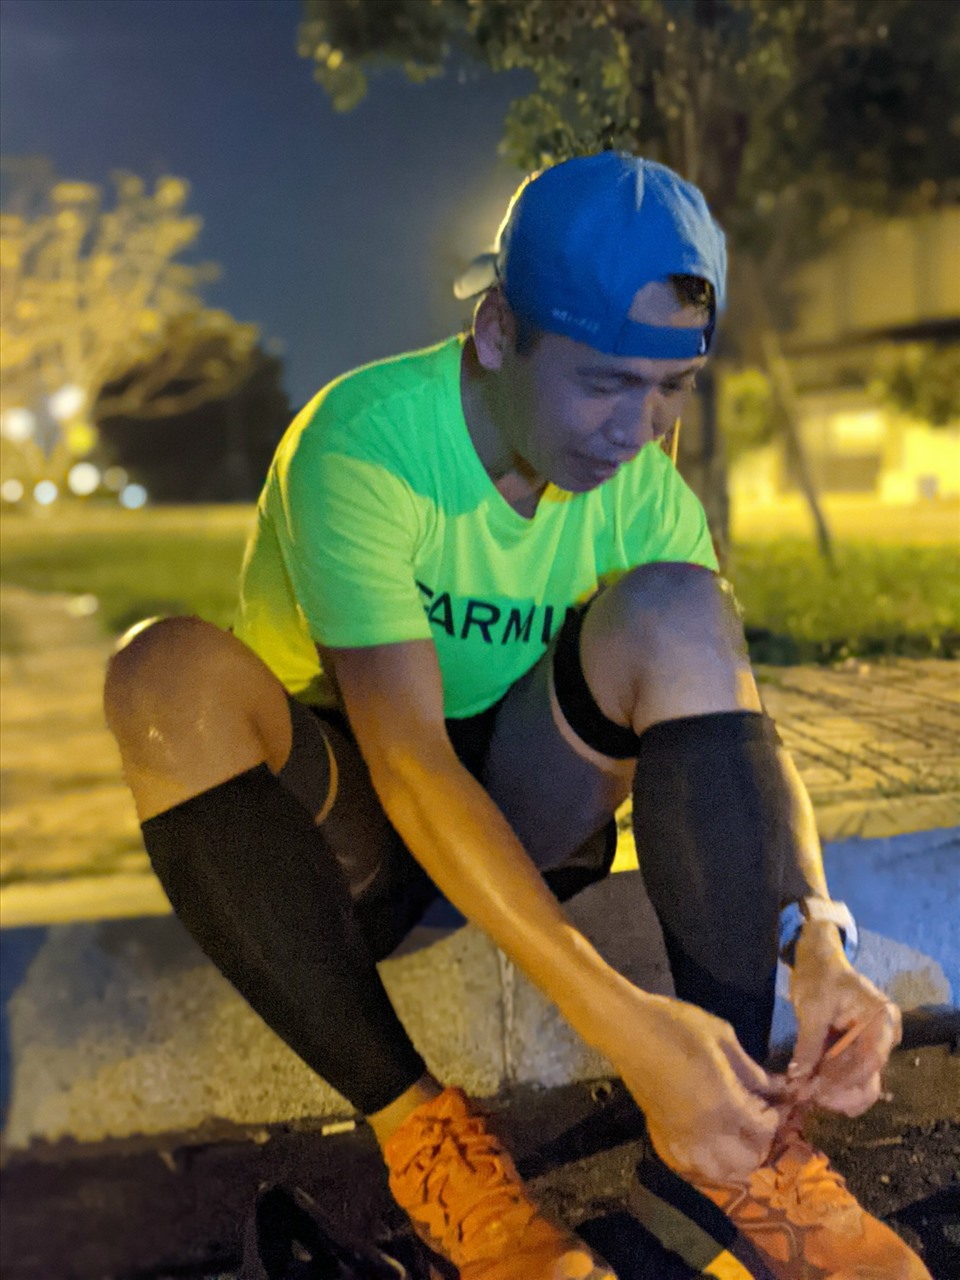 Nguyễn Được đã chạy xuyên đêm suốt sáng để đạt thử thách chạy bộ 100km liên tiếp dưới 18 giờ. Ảnh: TGCC